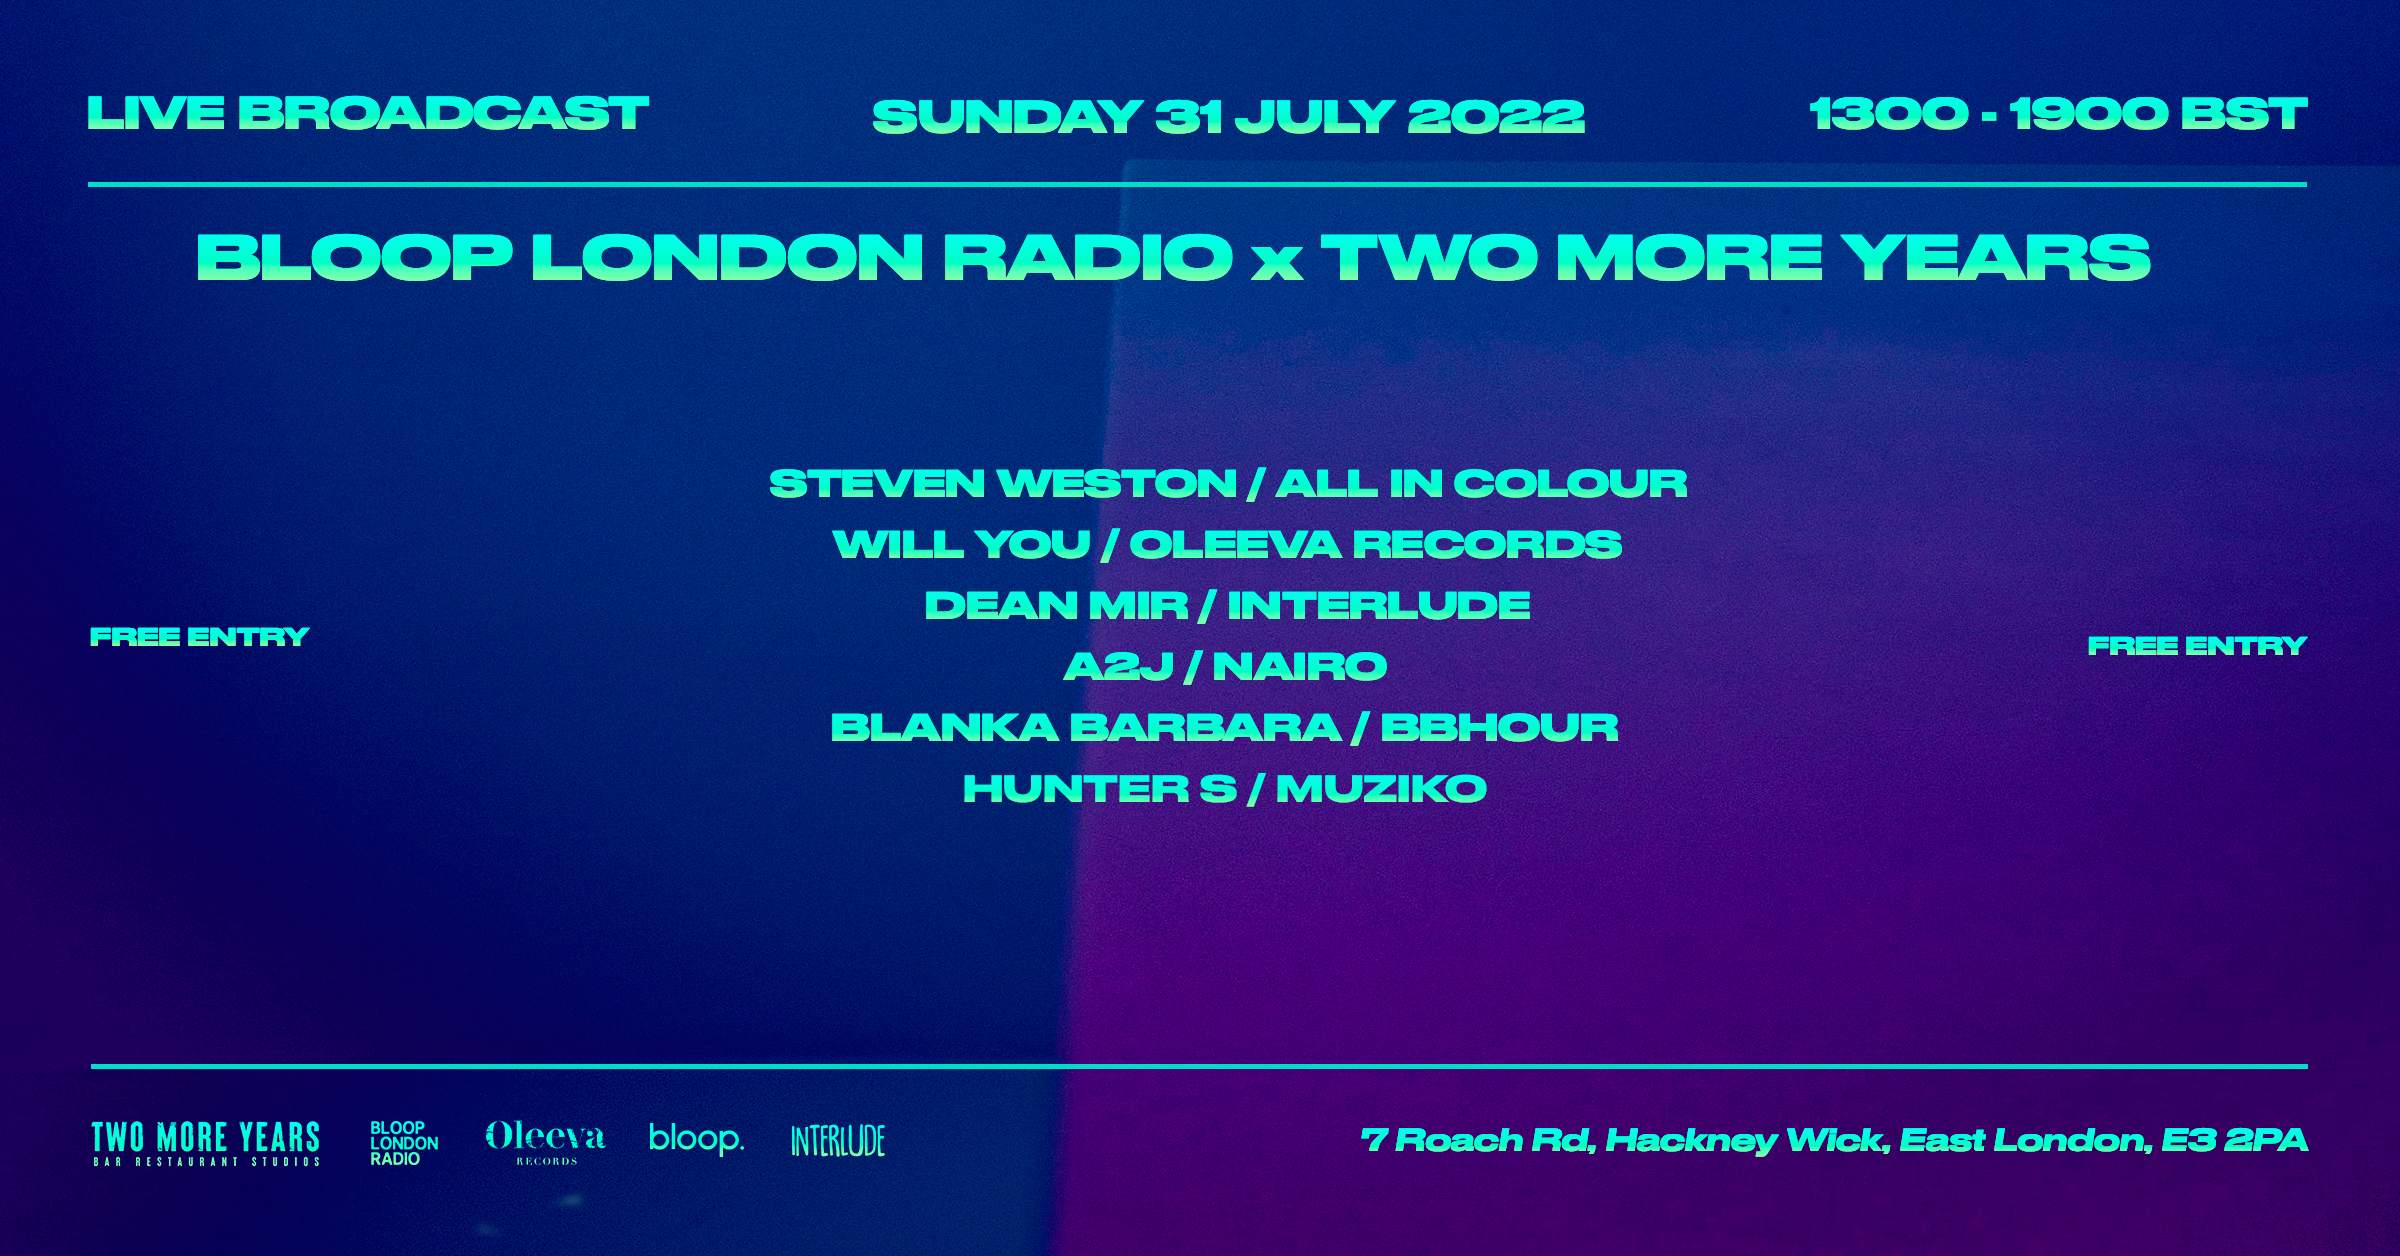 Bloop London Radio x Two More Years - Página frontal